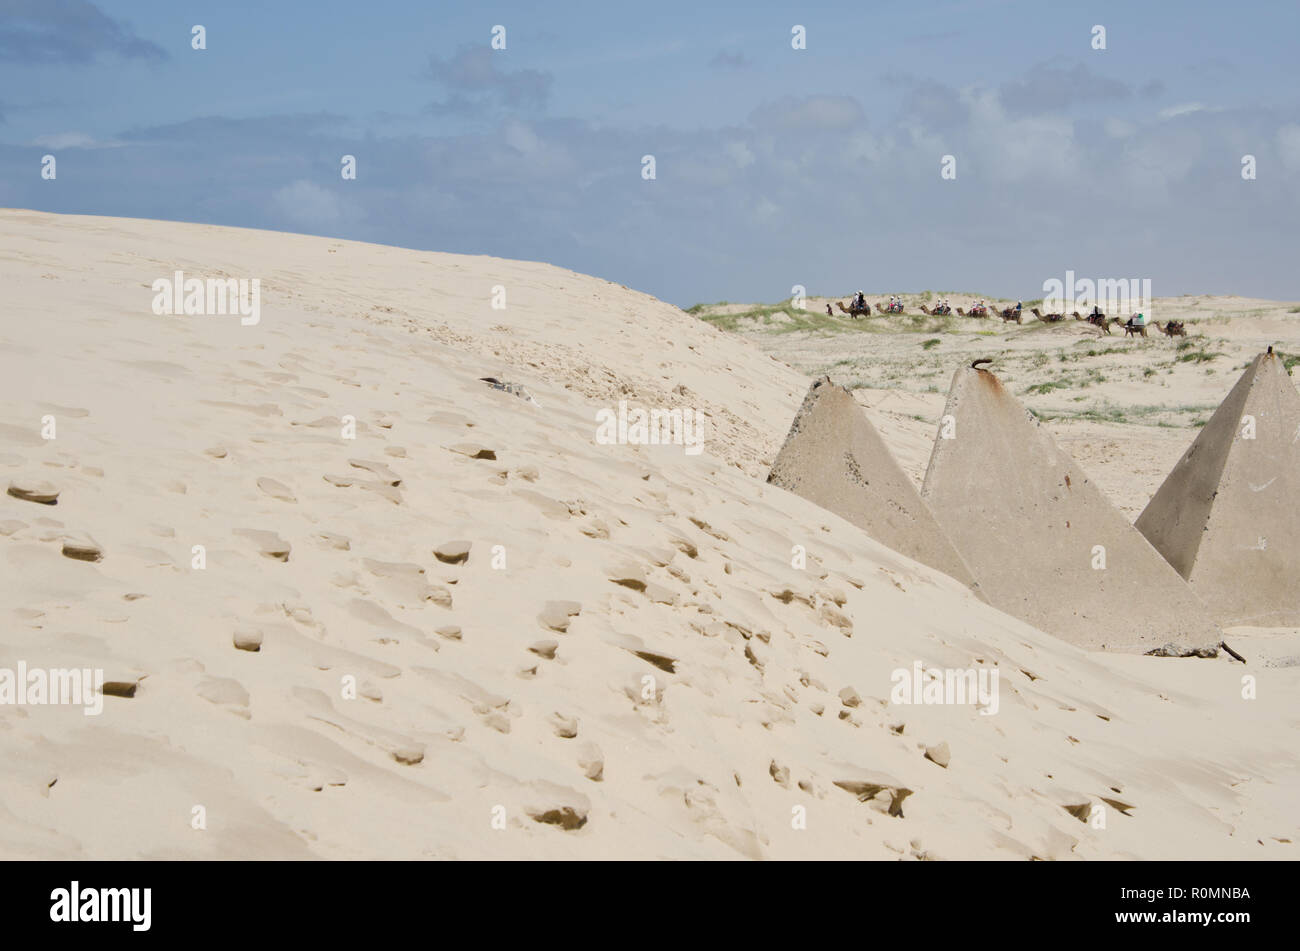 Soñando con el desierto del Sahara aventura. Los jinetes de camellos en el horizonte a distancia con grandes dunas de arena y piedra con forma de pirámide en primer plano. Foto de stock